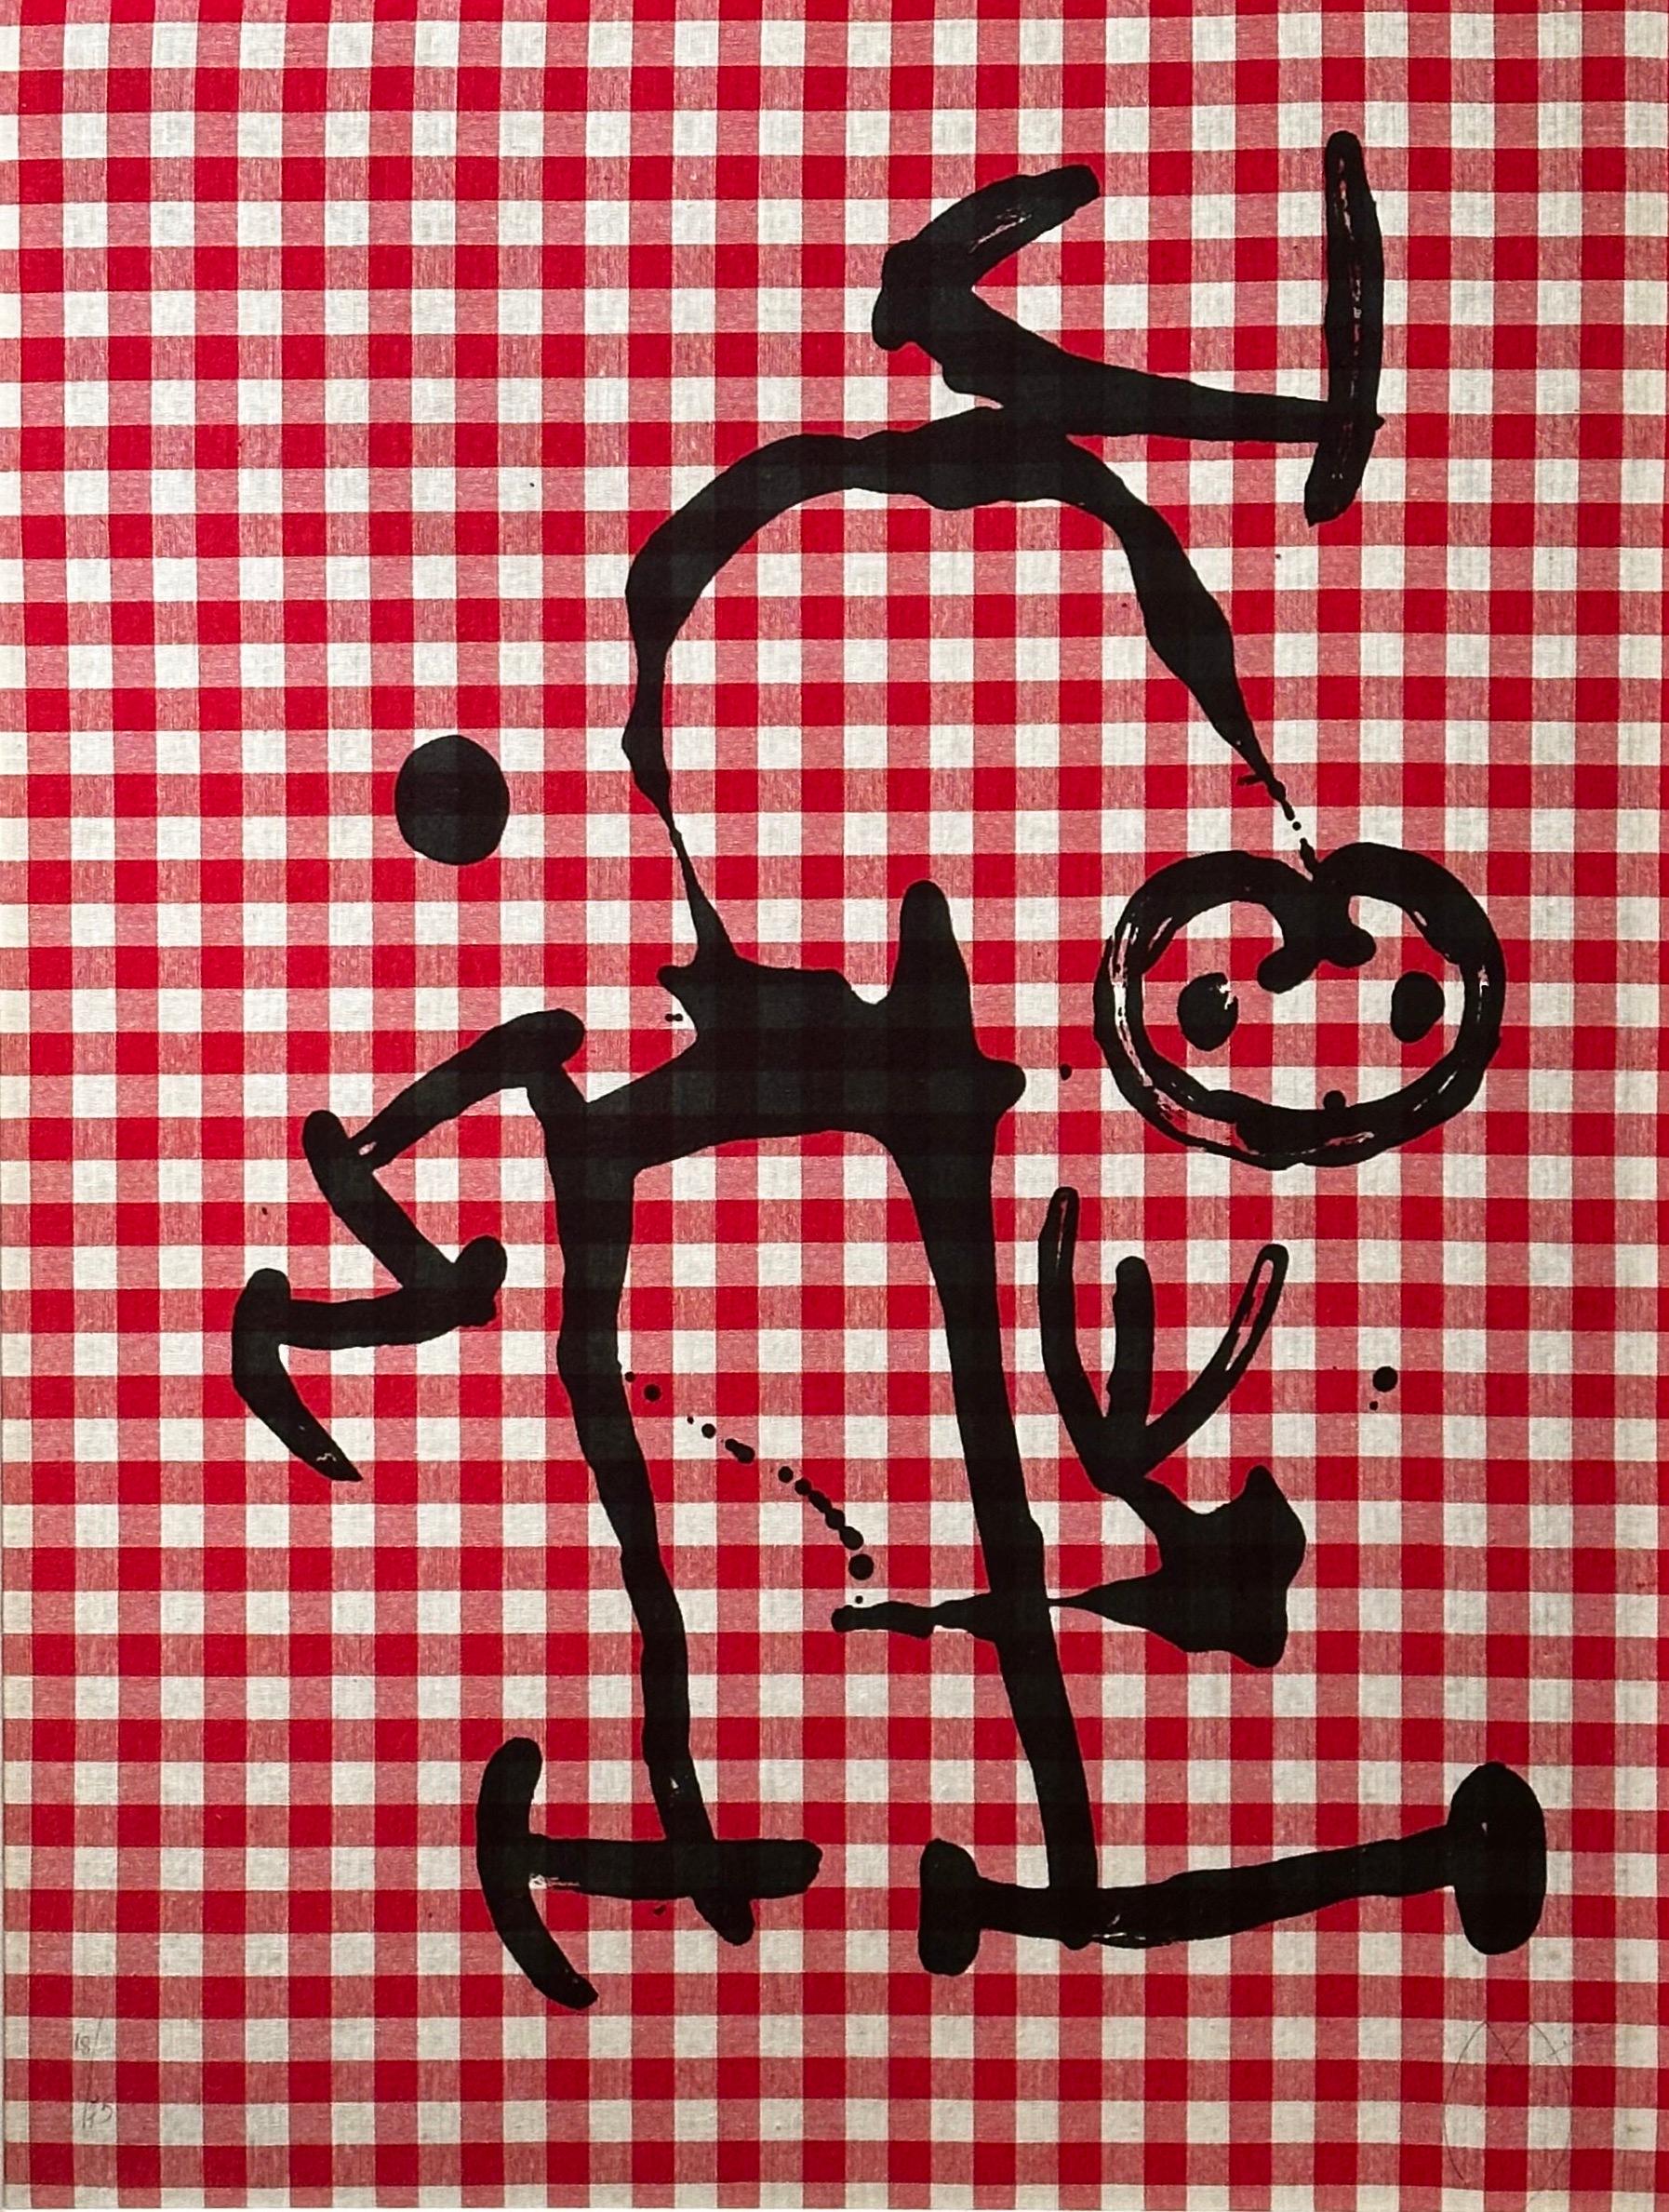 L'Illettré aux Carreaux Rouges - Print de Joan Miró